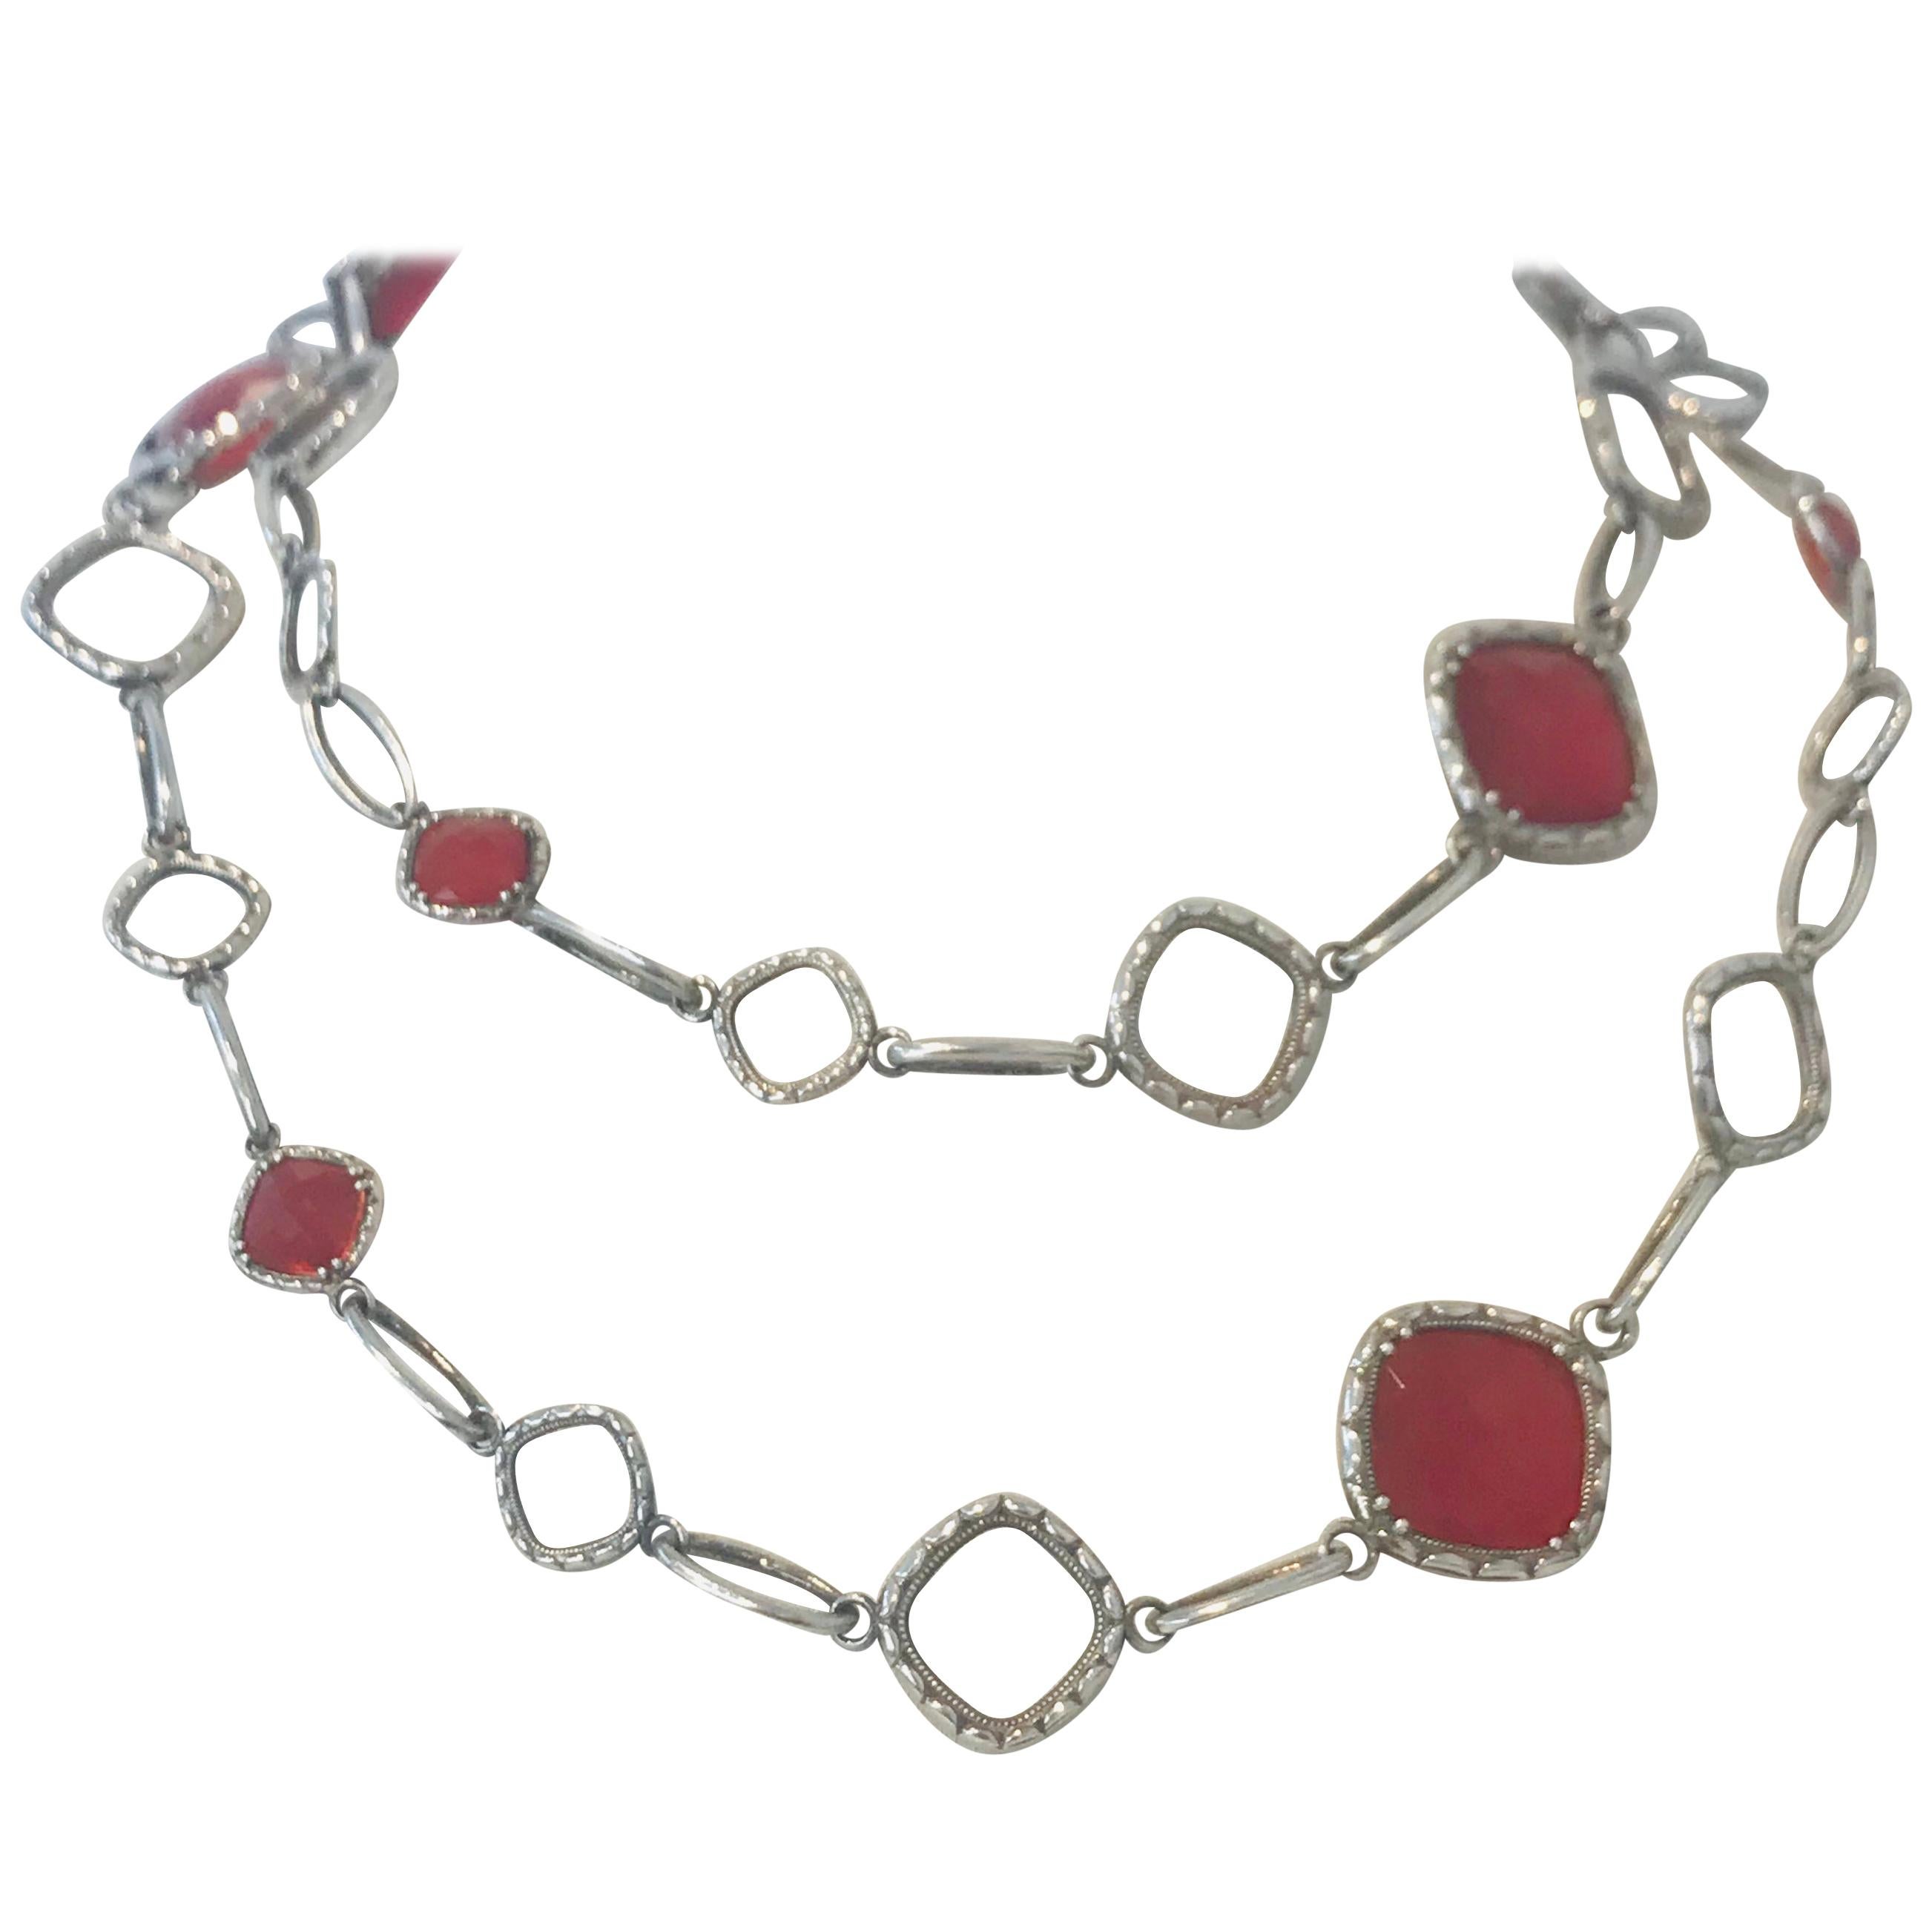 Original Rare Tacori Cascading Gem Necklace Featuring Clear Quartz over Red Onyx For Sale